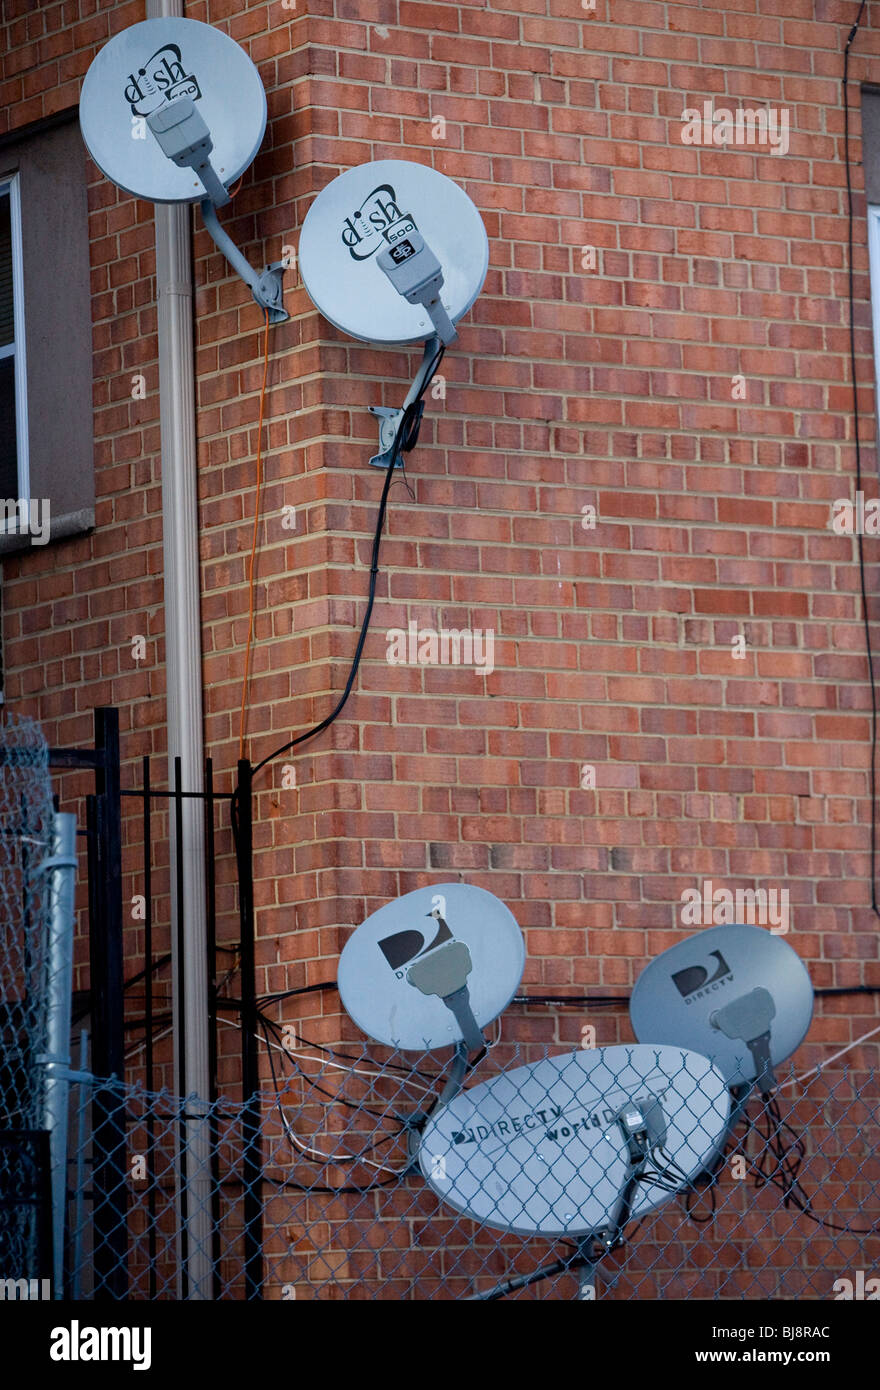 DirecTV et Dish Network des antennes paraboliques sur un immeuble à appartements. Banque D'Images